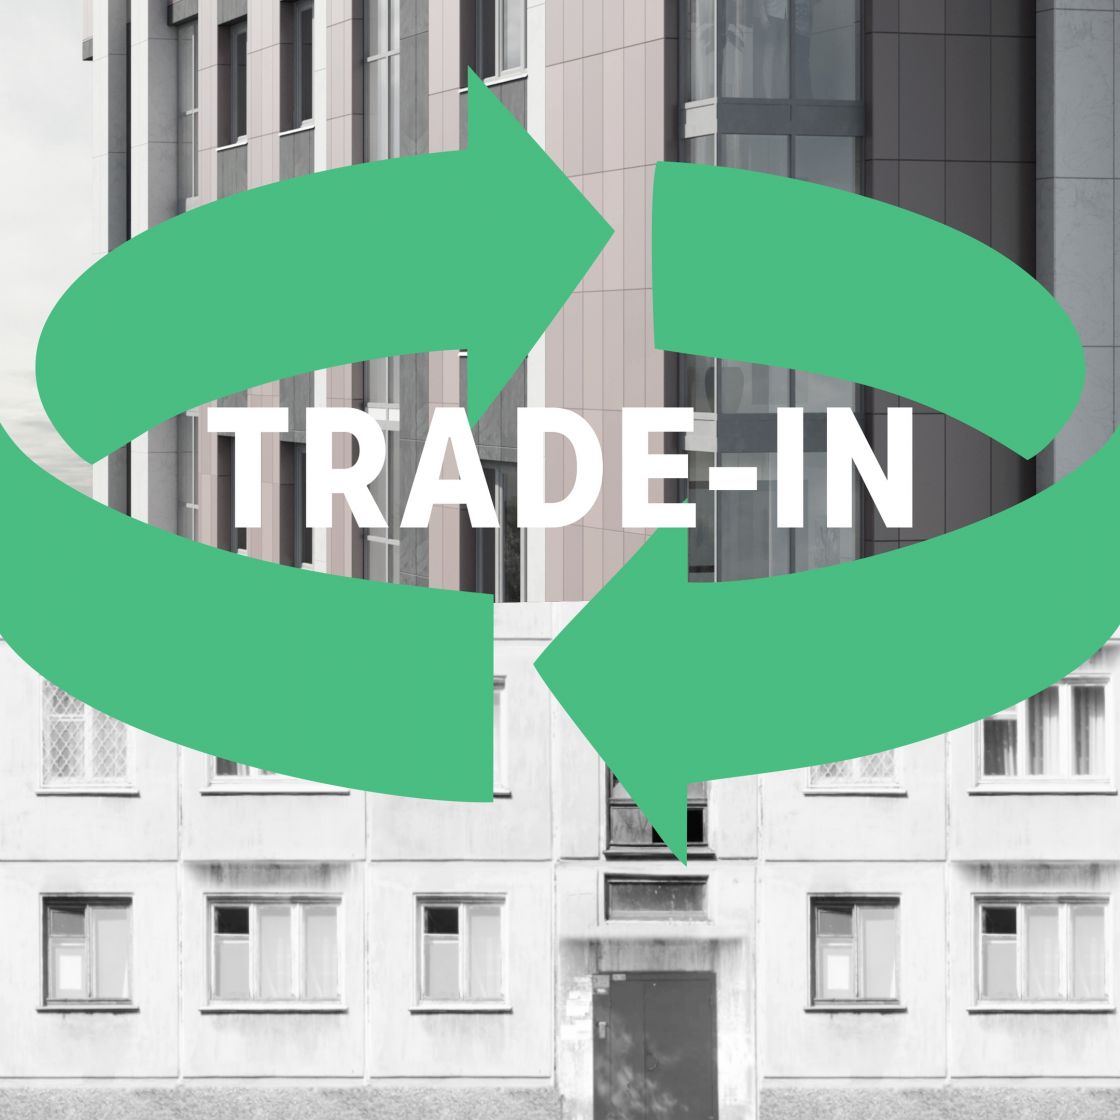 Обменять старую на новую: главные преимущества программы trade-in от «Зелёного сада»